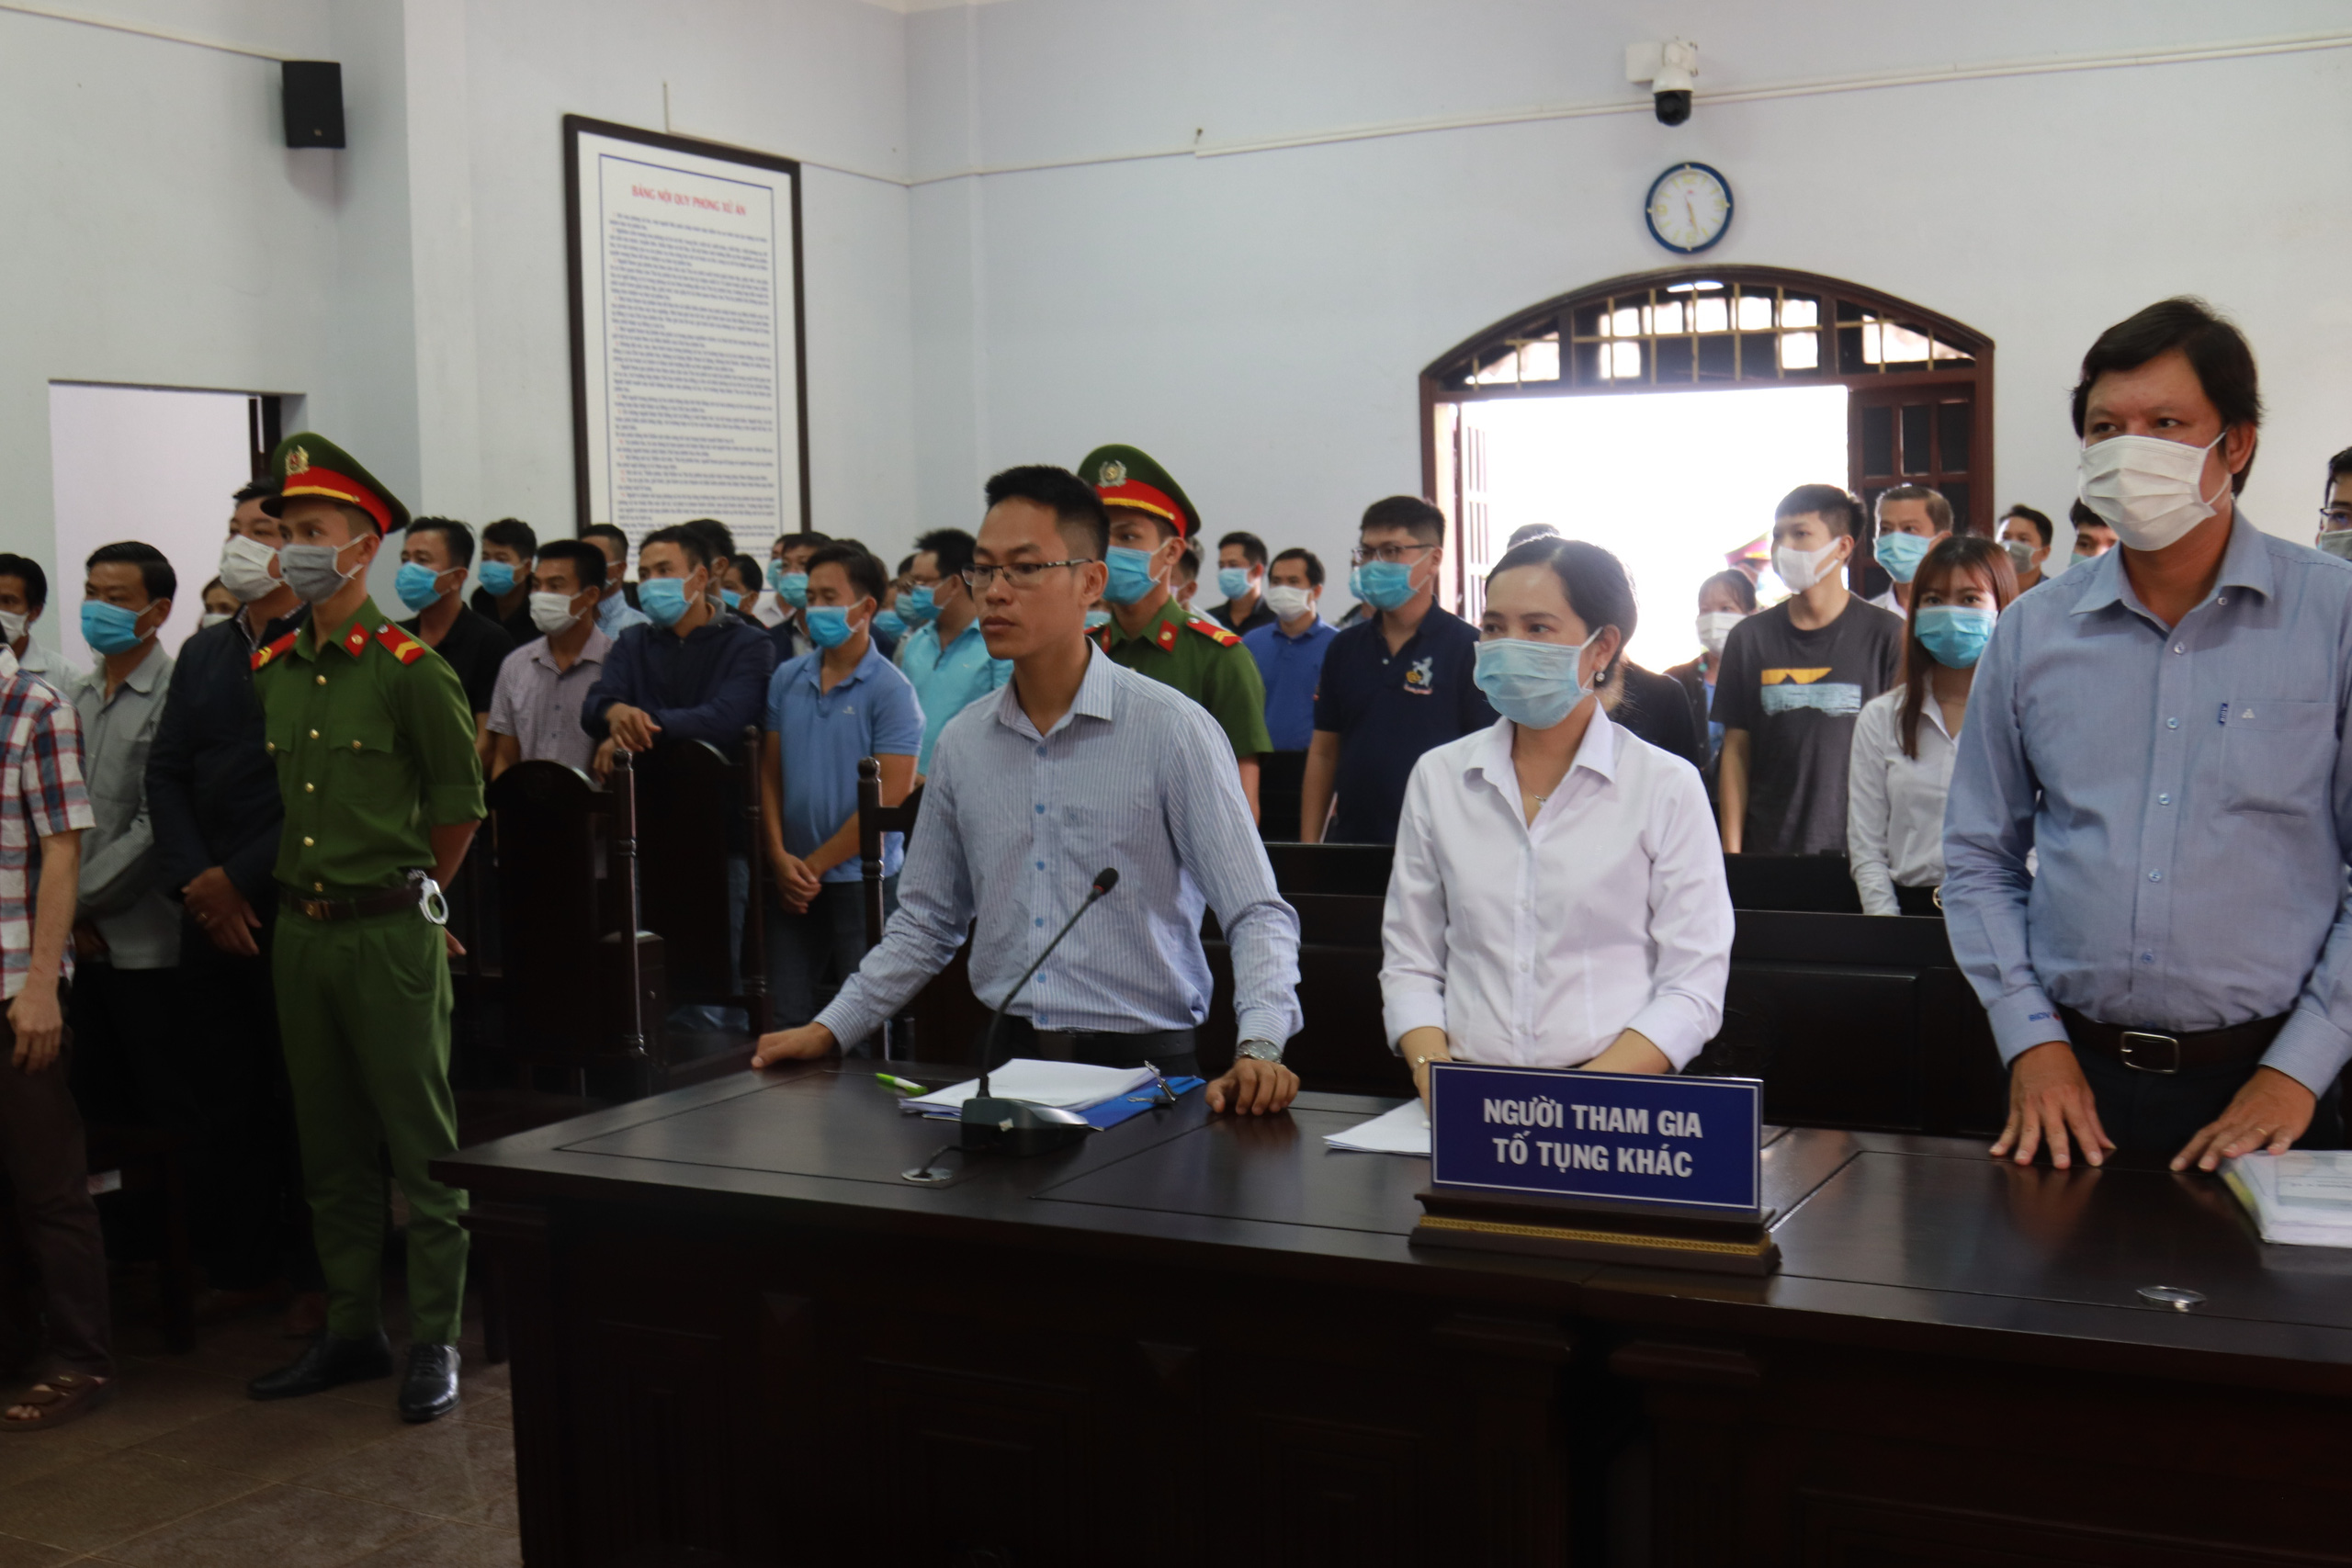 Toàn cảnh phiên tòa xét xử đường dây sản xuất xăng giả của Trịnh Sướng - Ảnh 12.